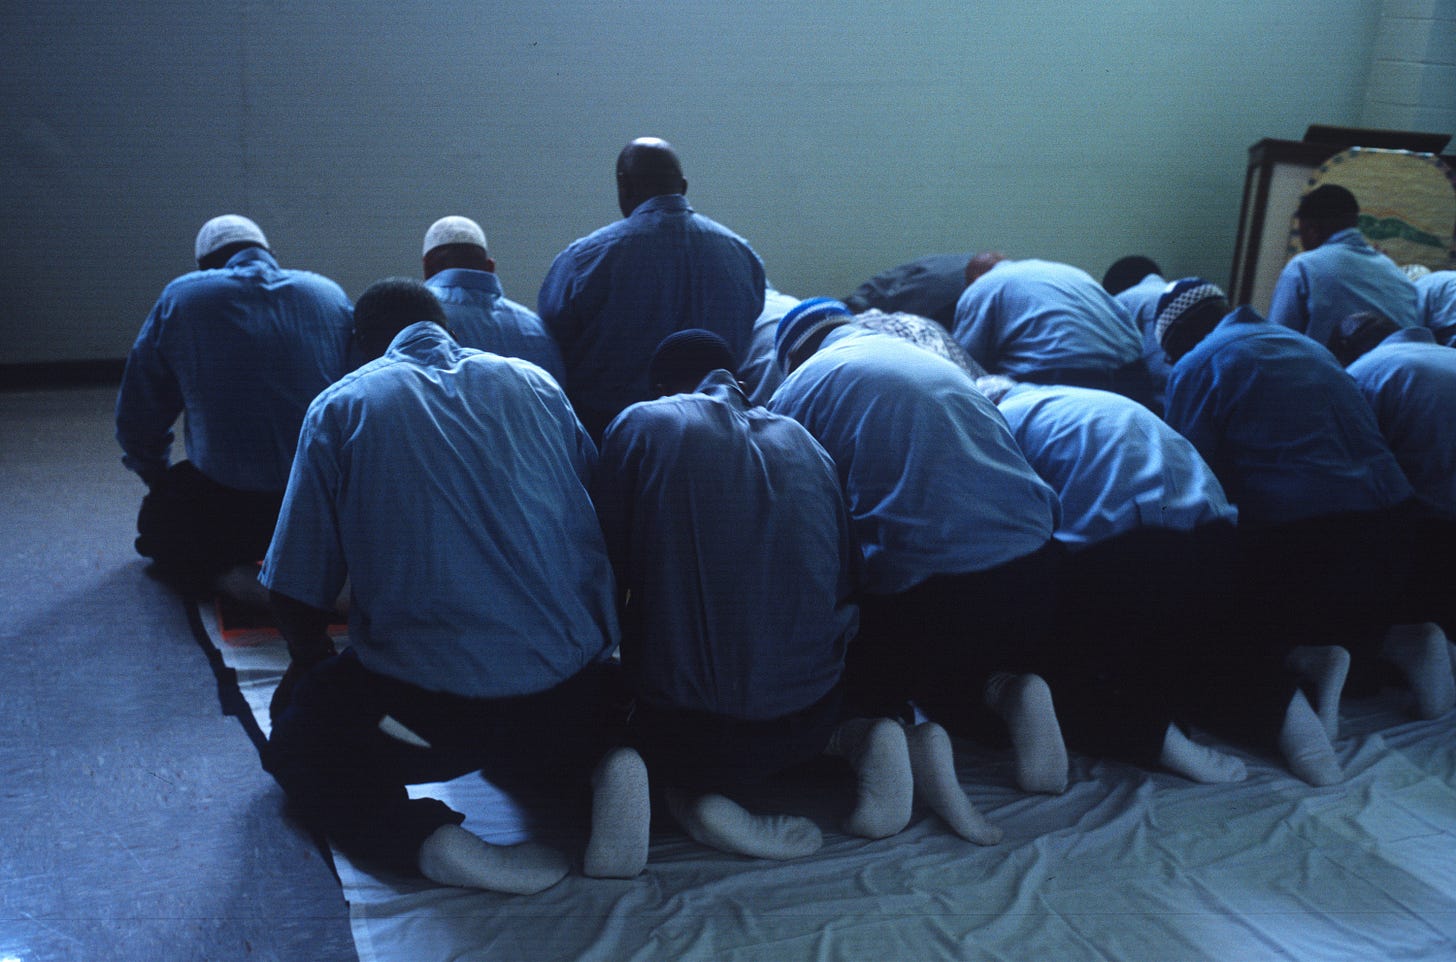 Euroopan vankilat ovat täynnä käännytystyötä tekeviä islamilaisia terroristeja ja rekrytoijia.